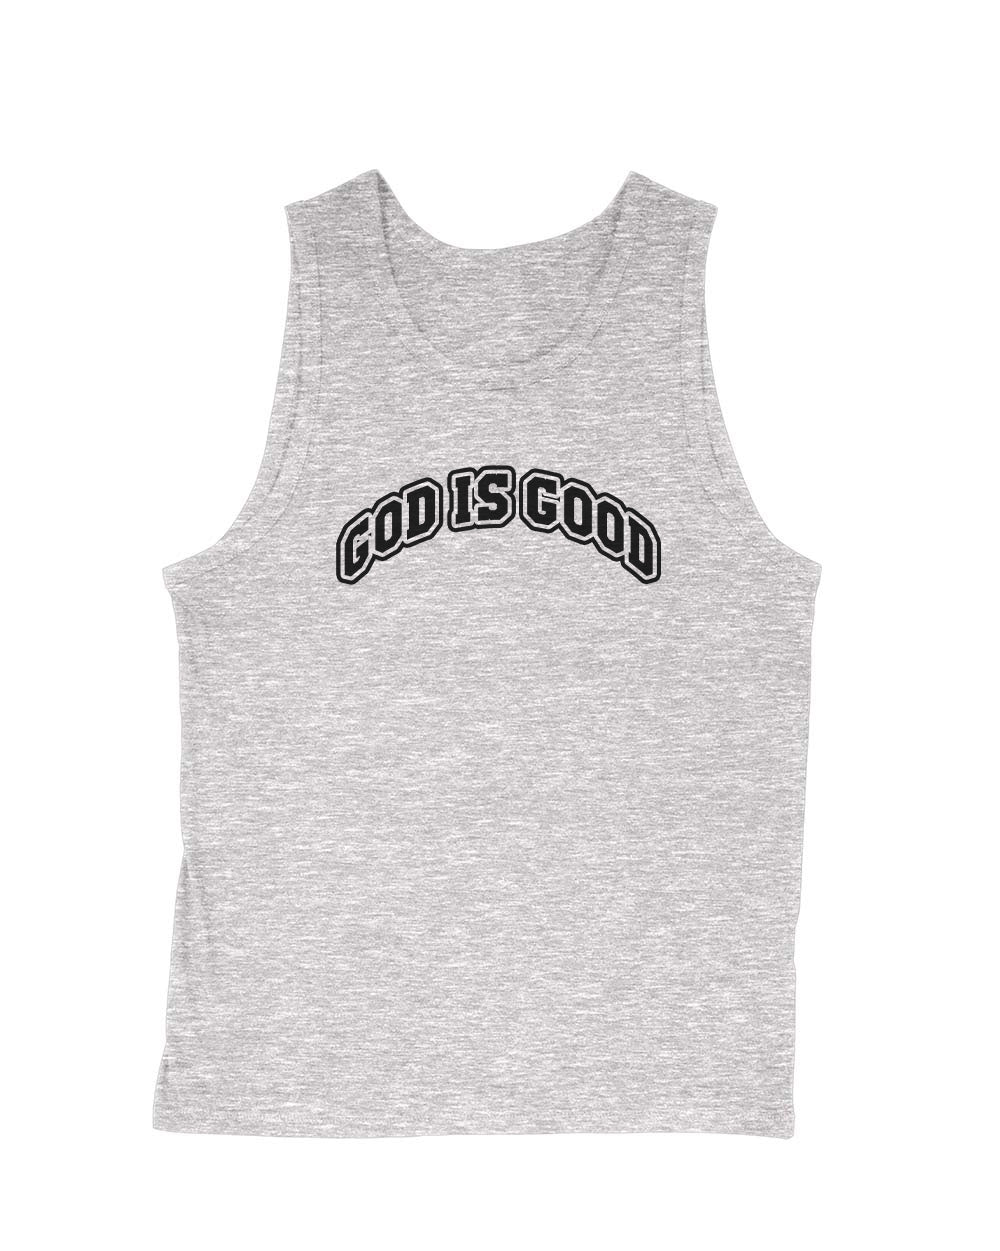 Men's | God Is Good | Tank Top